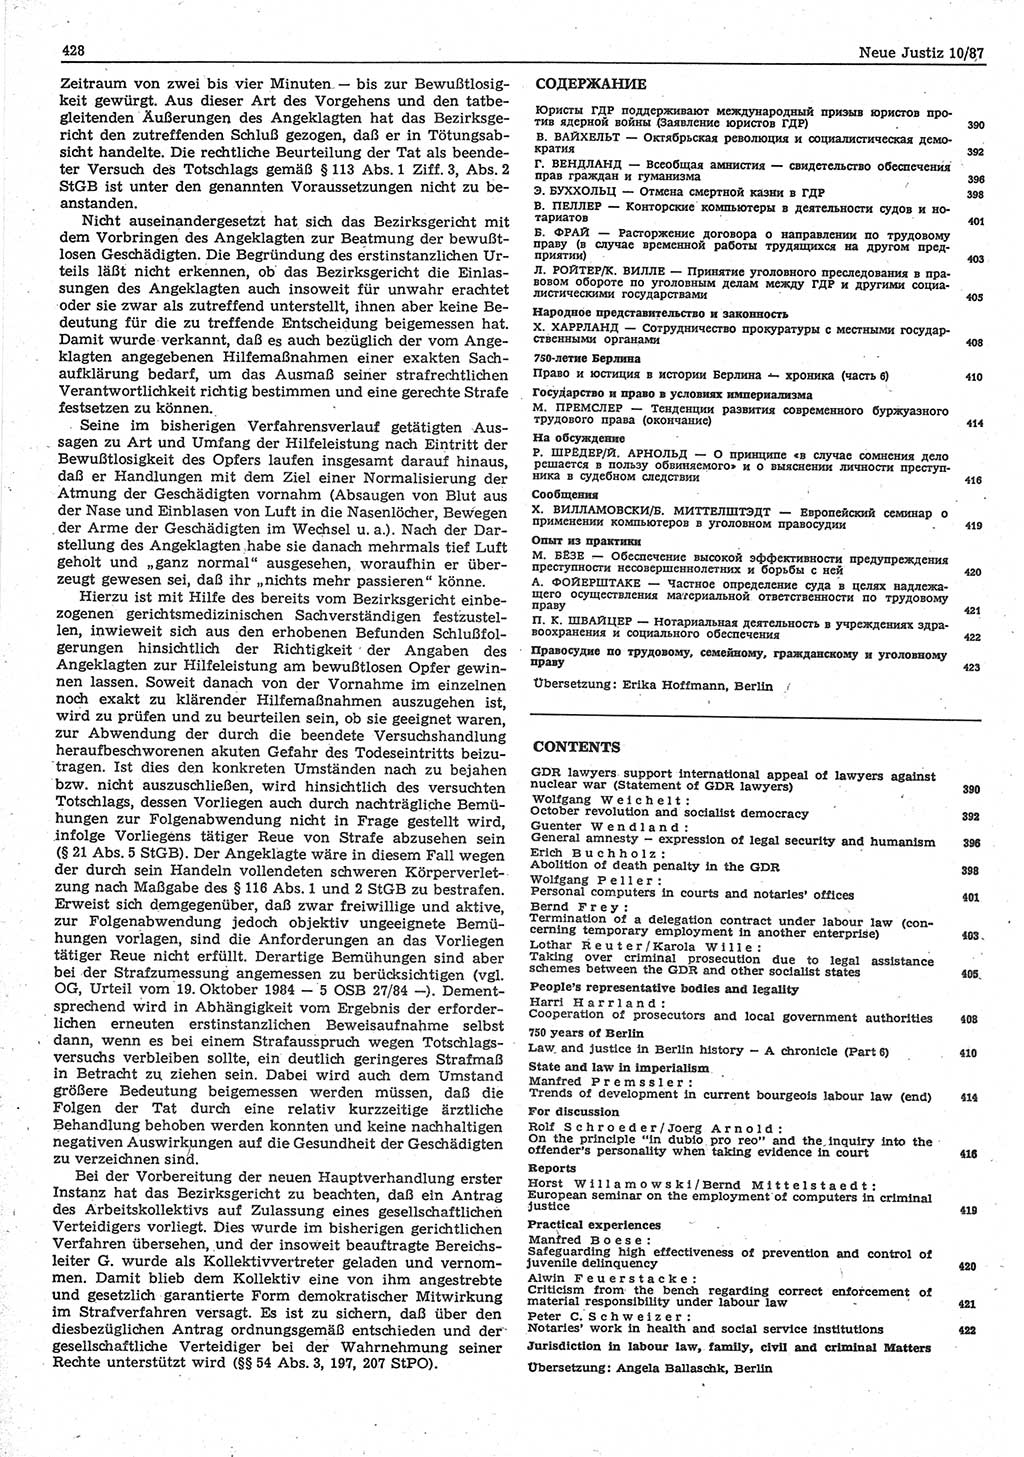 Neue Justiz (NJ), Zeitschrift für sozialistisches Recht und Gesetzlichkeit [Deutsche Demokratische Republik (DDR)], 41. Jahrgang 1987, Seite 428 (NJ DDR 1987, S. 428)